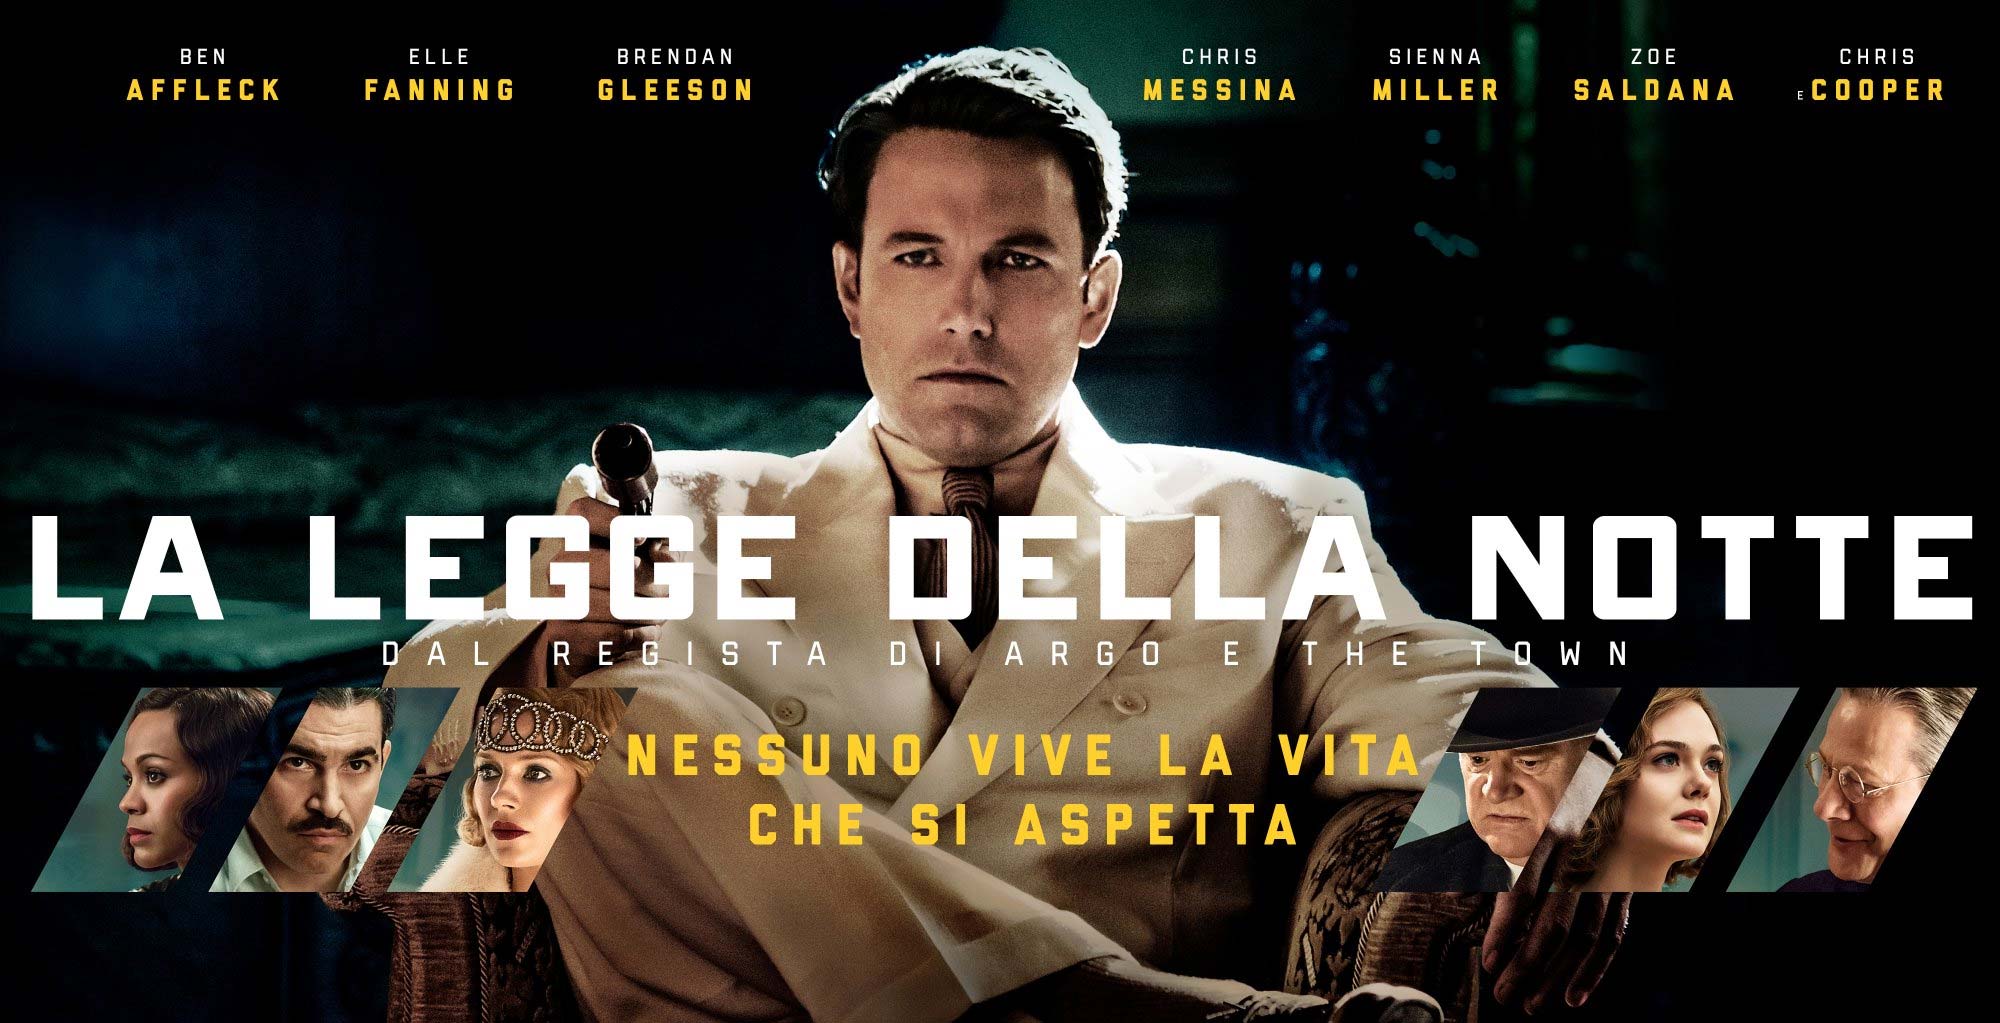 La legge della notte, nuovo poster del film di Ben Affleck